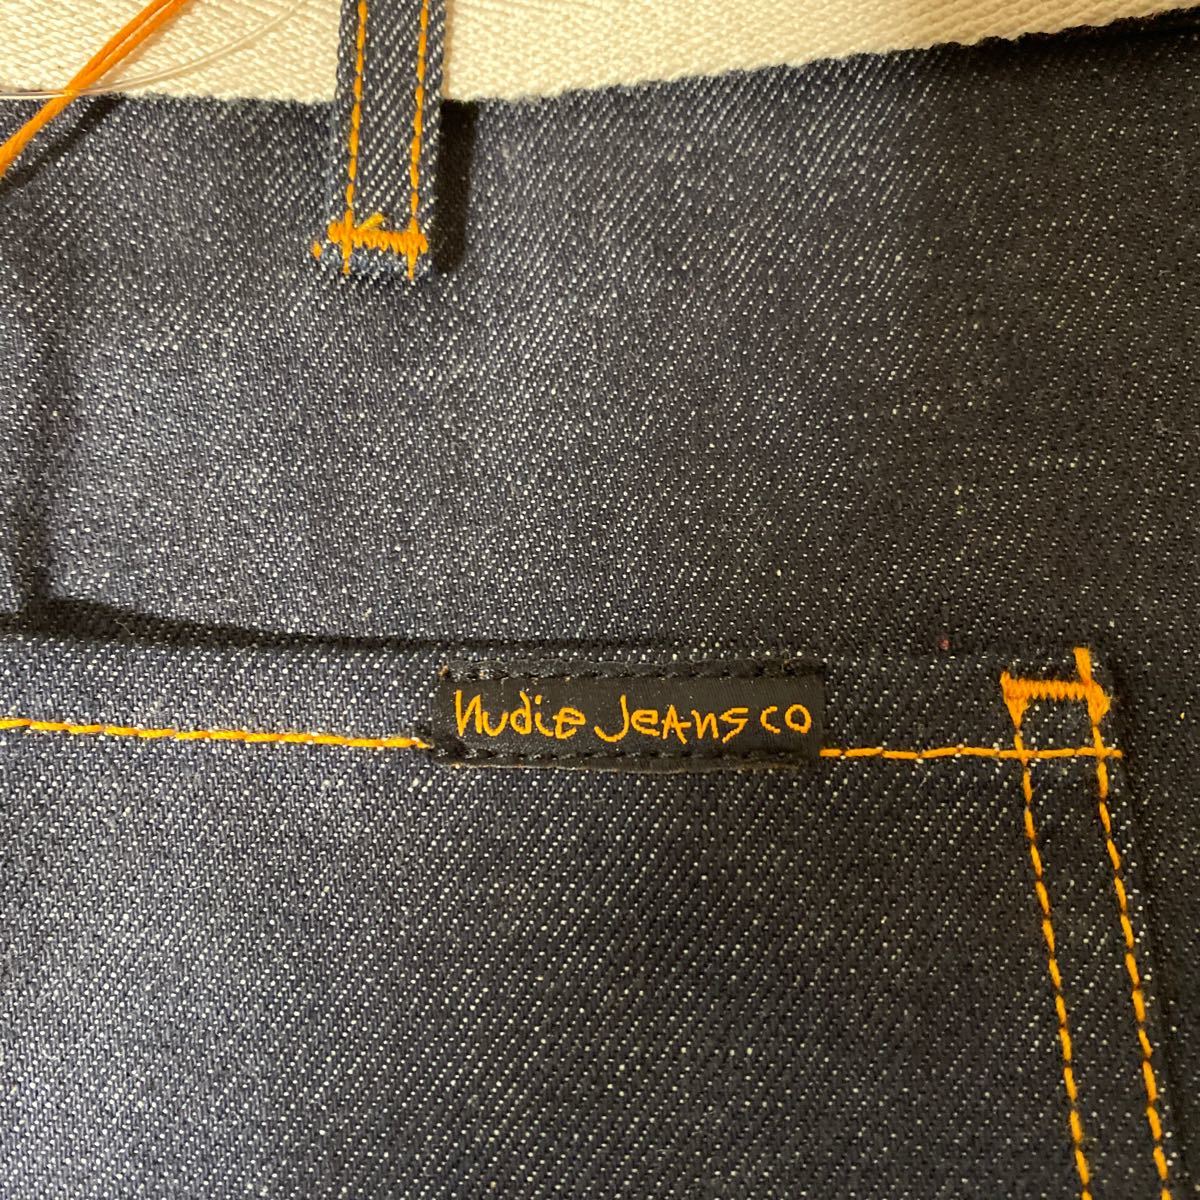  новый товар nudie jeans фартук Denim фартук поясница наматывать фартук салон фартук сомелье фартук n-ti джинсы 